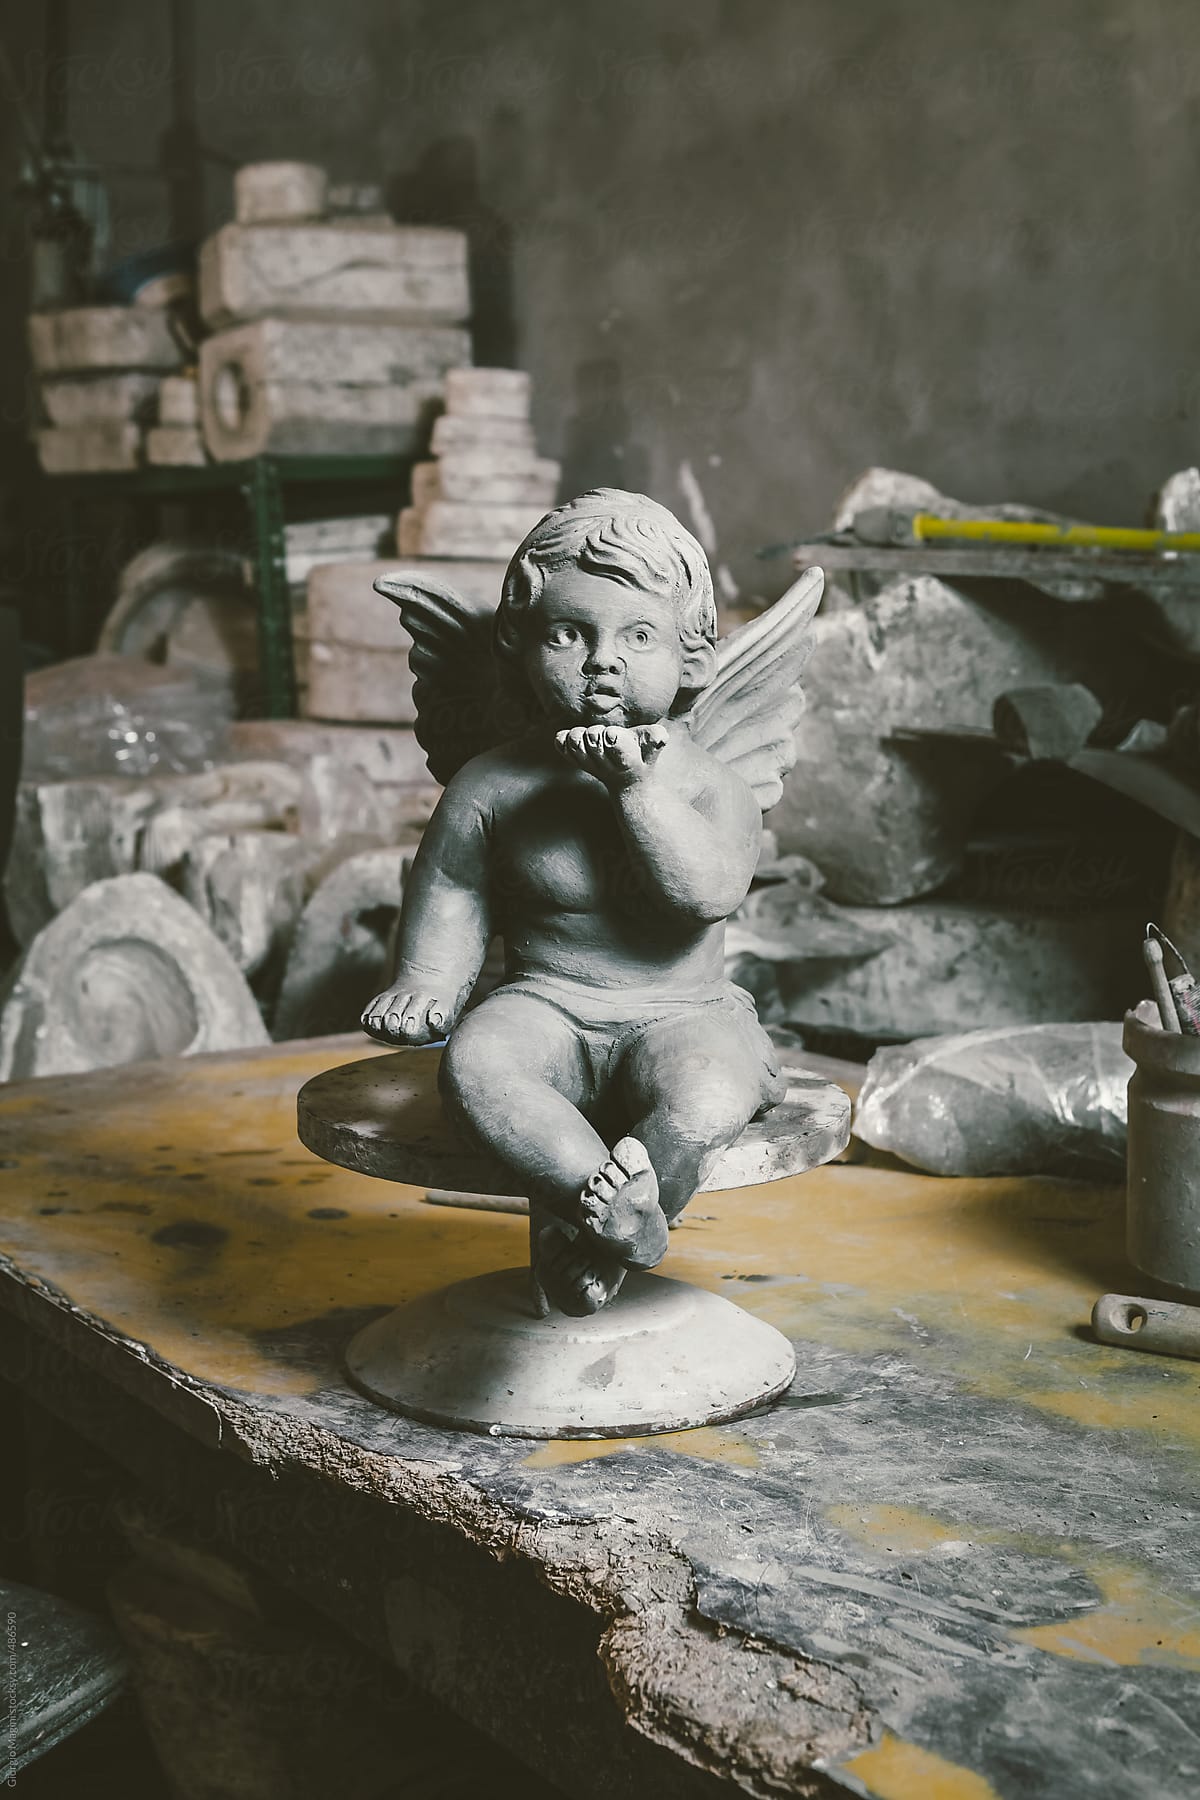 Terracotta Statue of a Little Angel in a Ceramics Studio